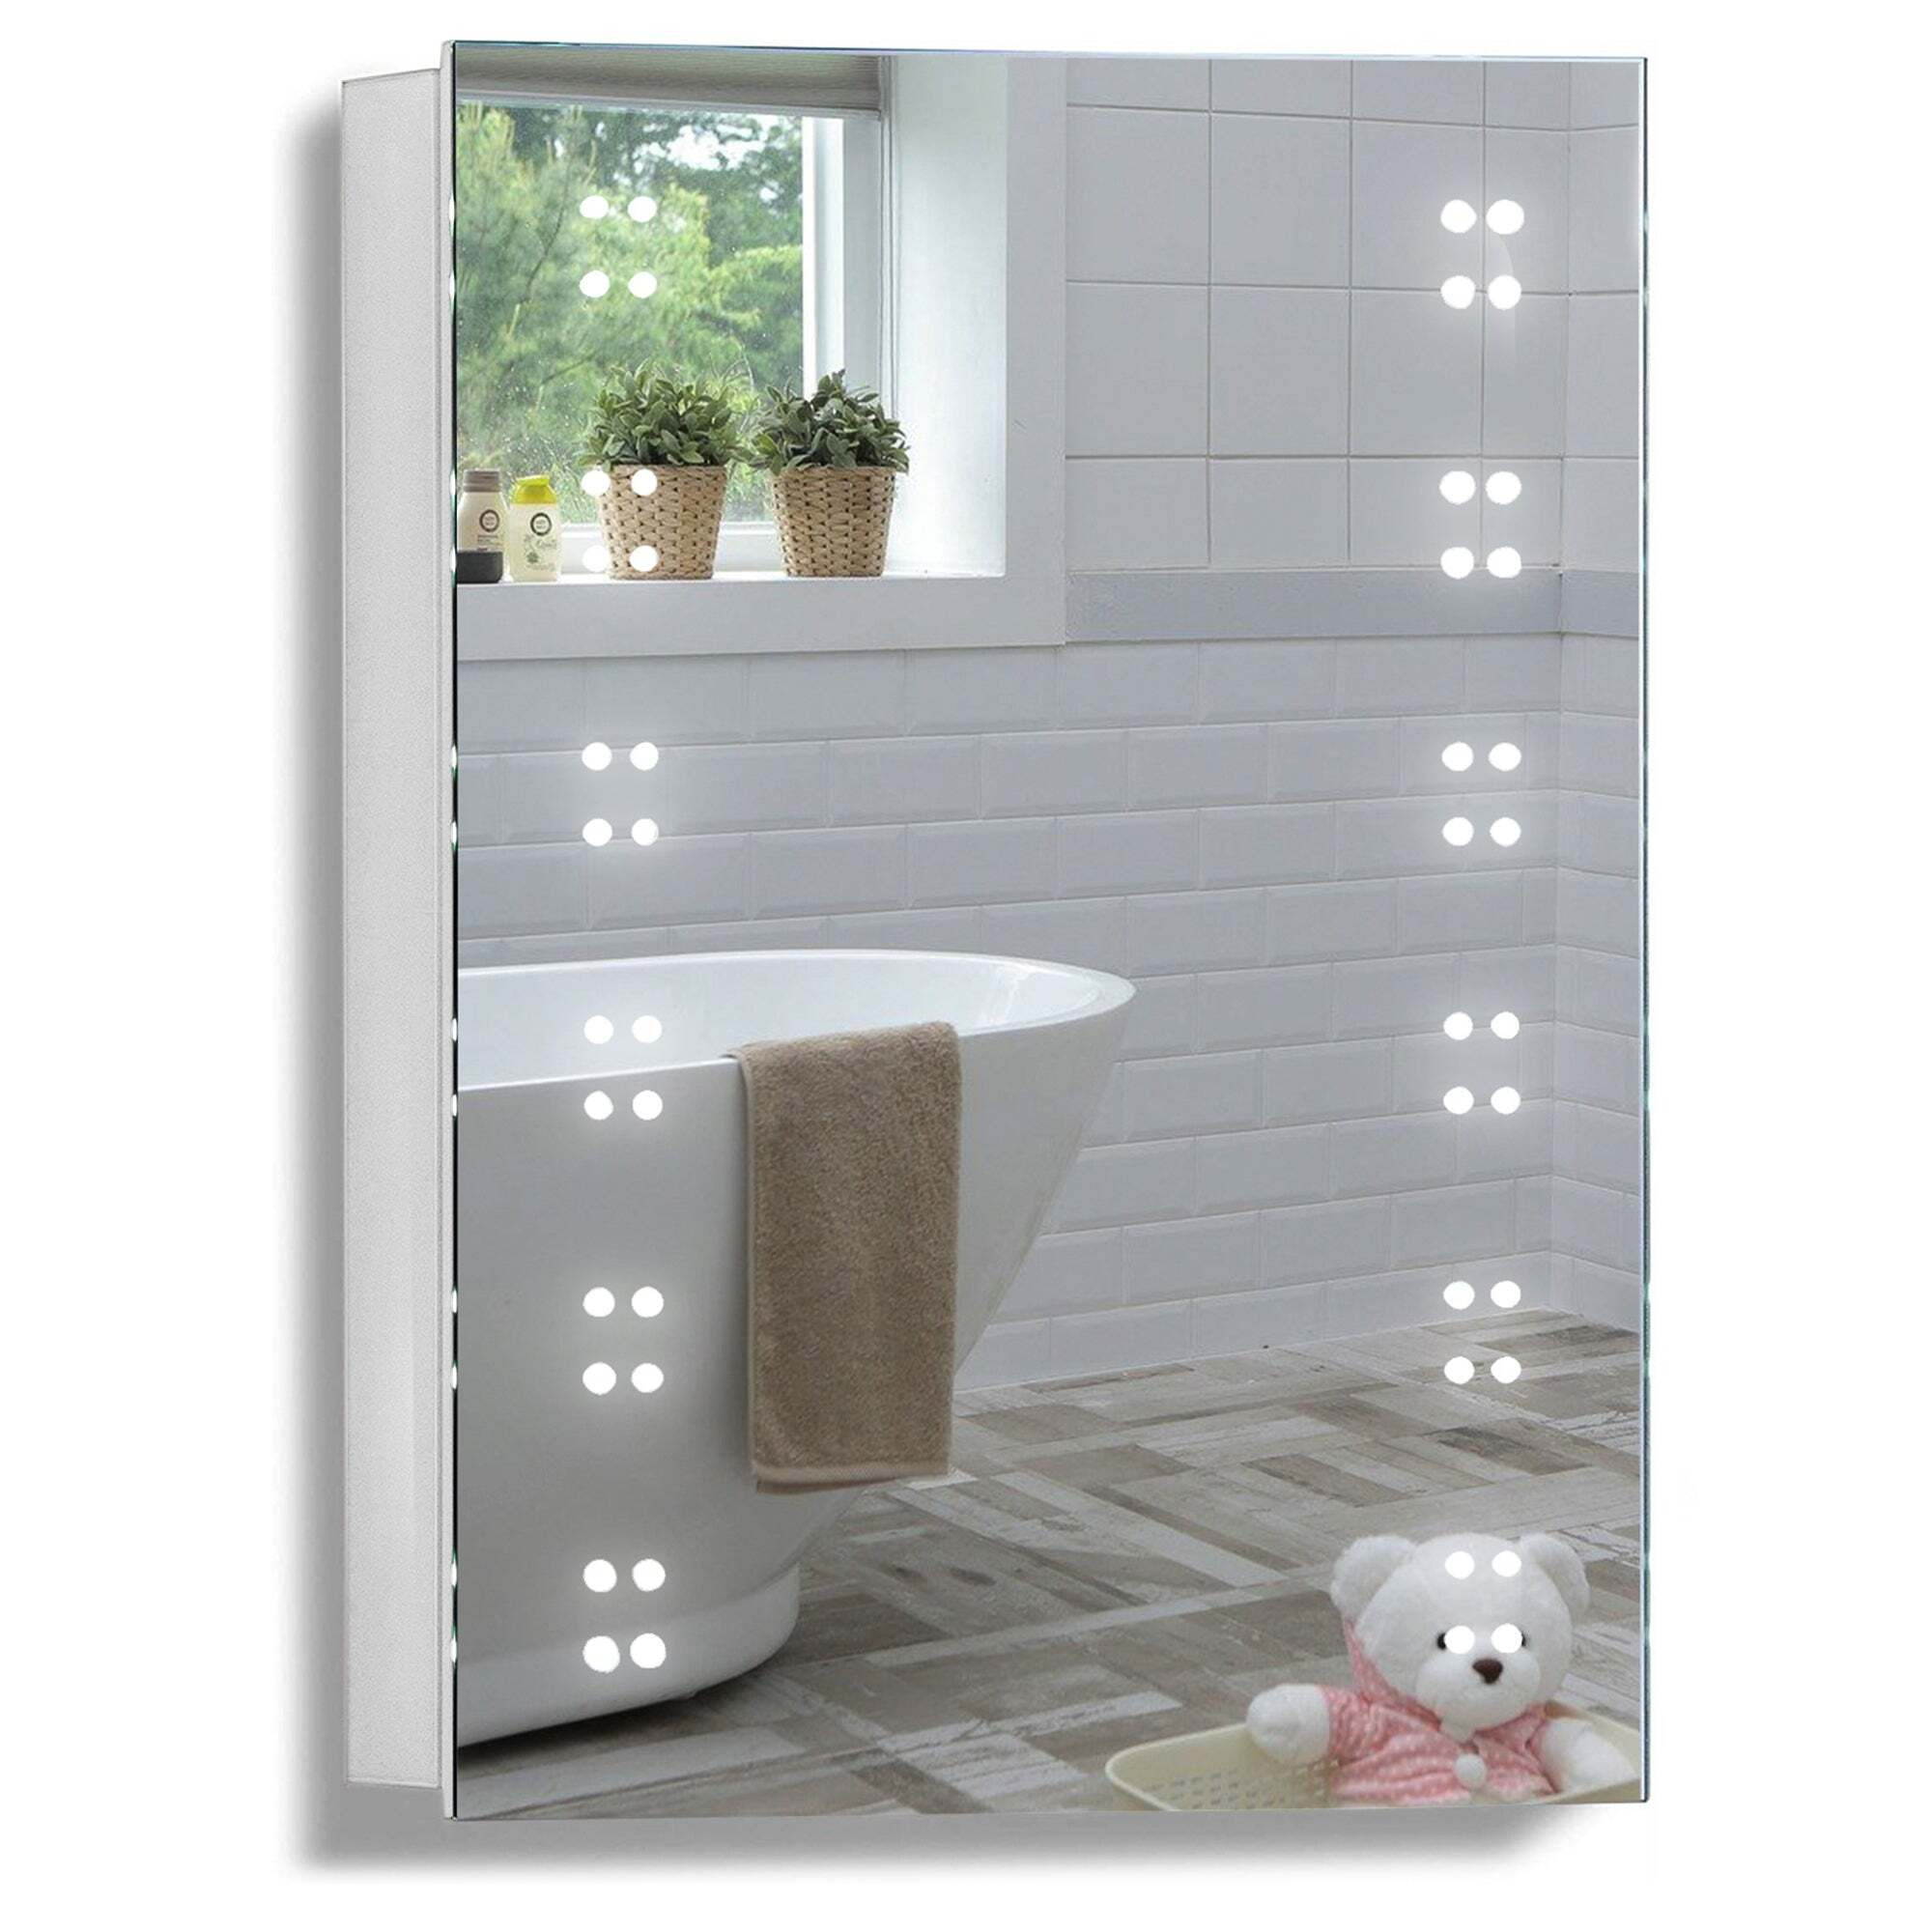 Altair LED Illuminated Bathroom Mirror Cabinet CABM16 Size-70Hx50Wx15Dcm